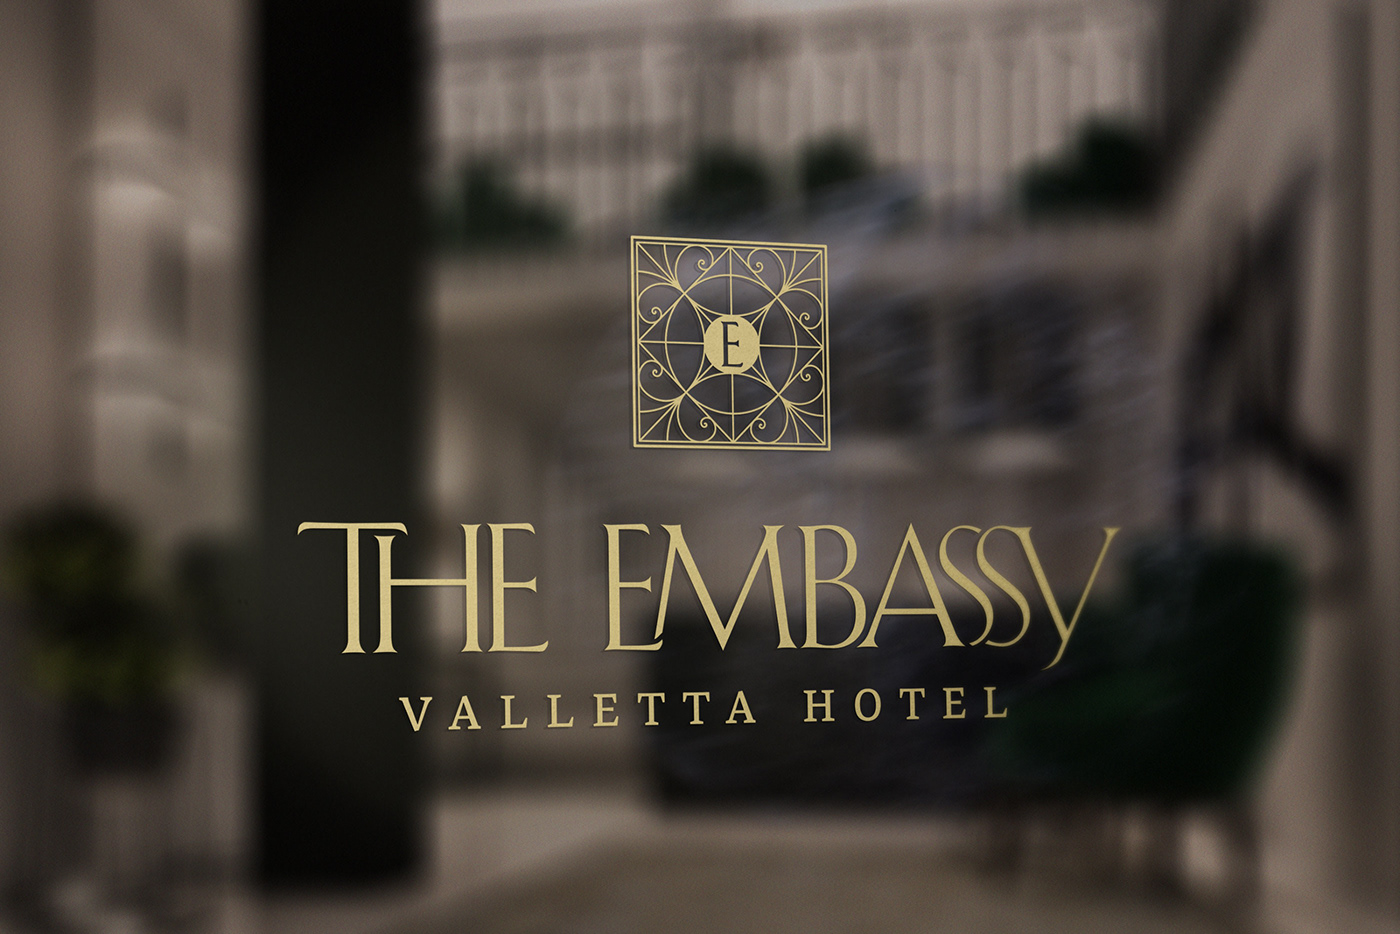 hotel Valletta malta brand identity logo Signage Packaging Advertising  branding 